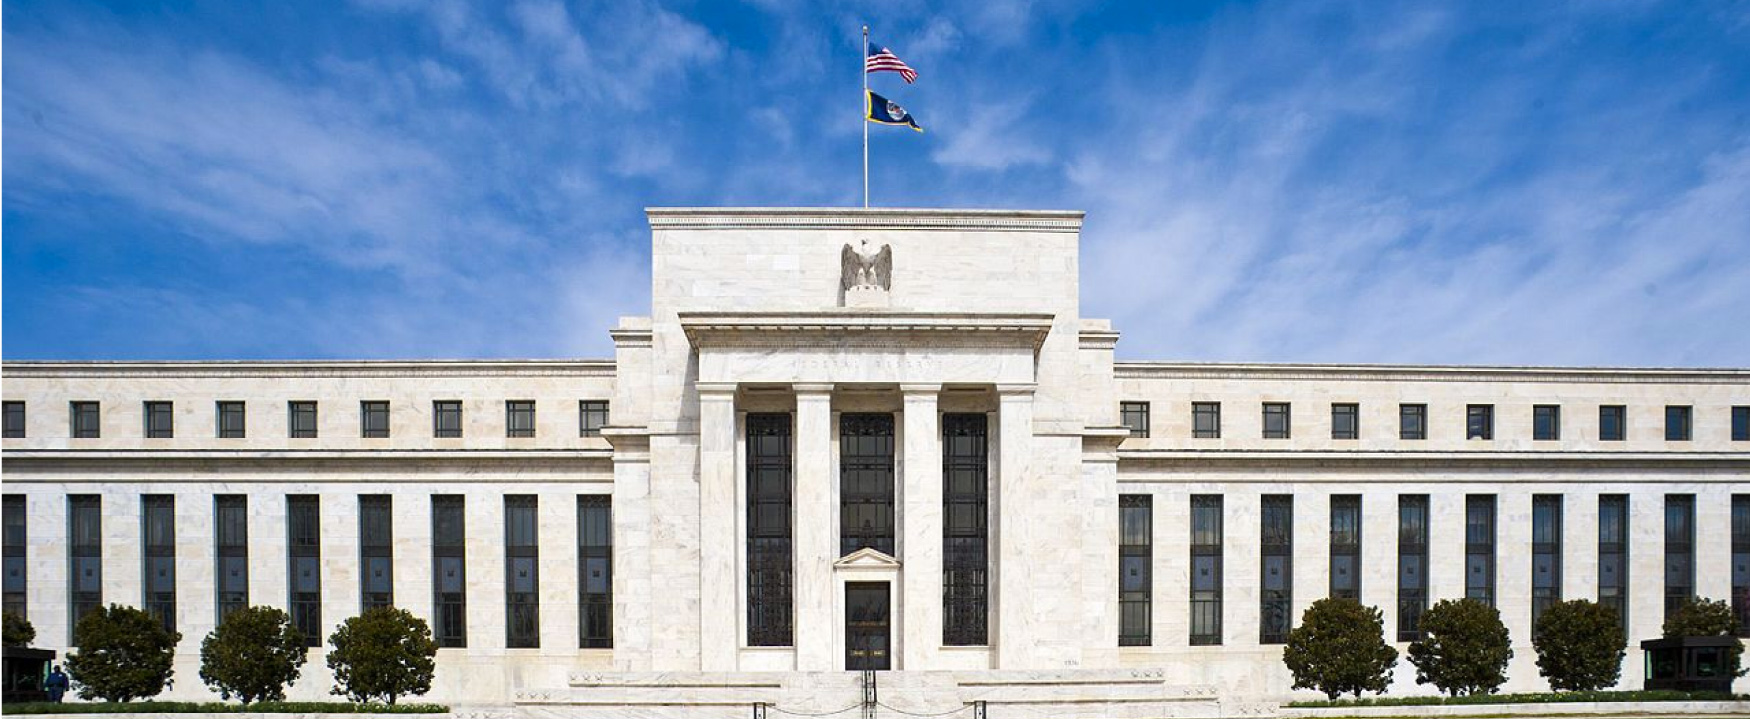 O Edifício do Conselho da Reserva Federal Marriner S. Eccles é exibido. O edifício muito grande, localizado em Washington DC, é construído em mármore branco e tem uma grande entrada.